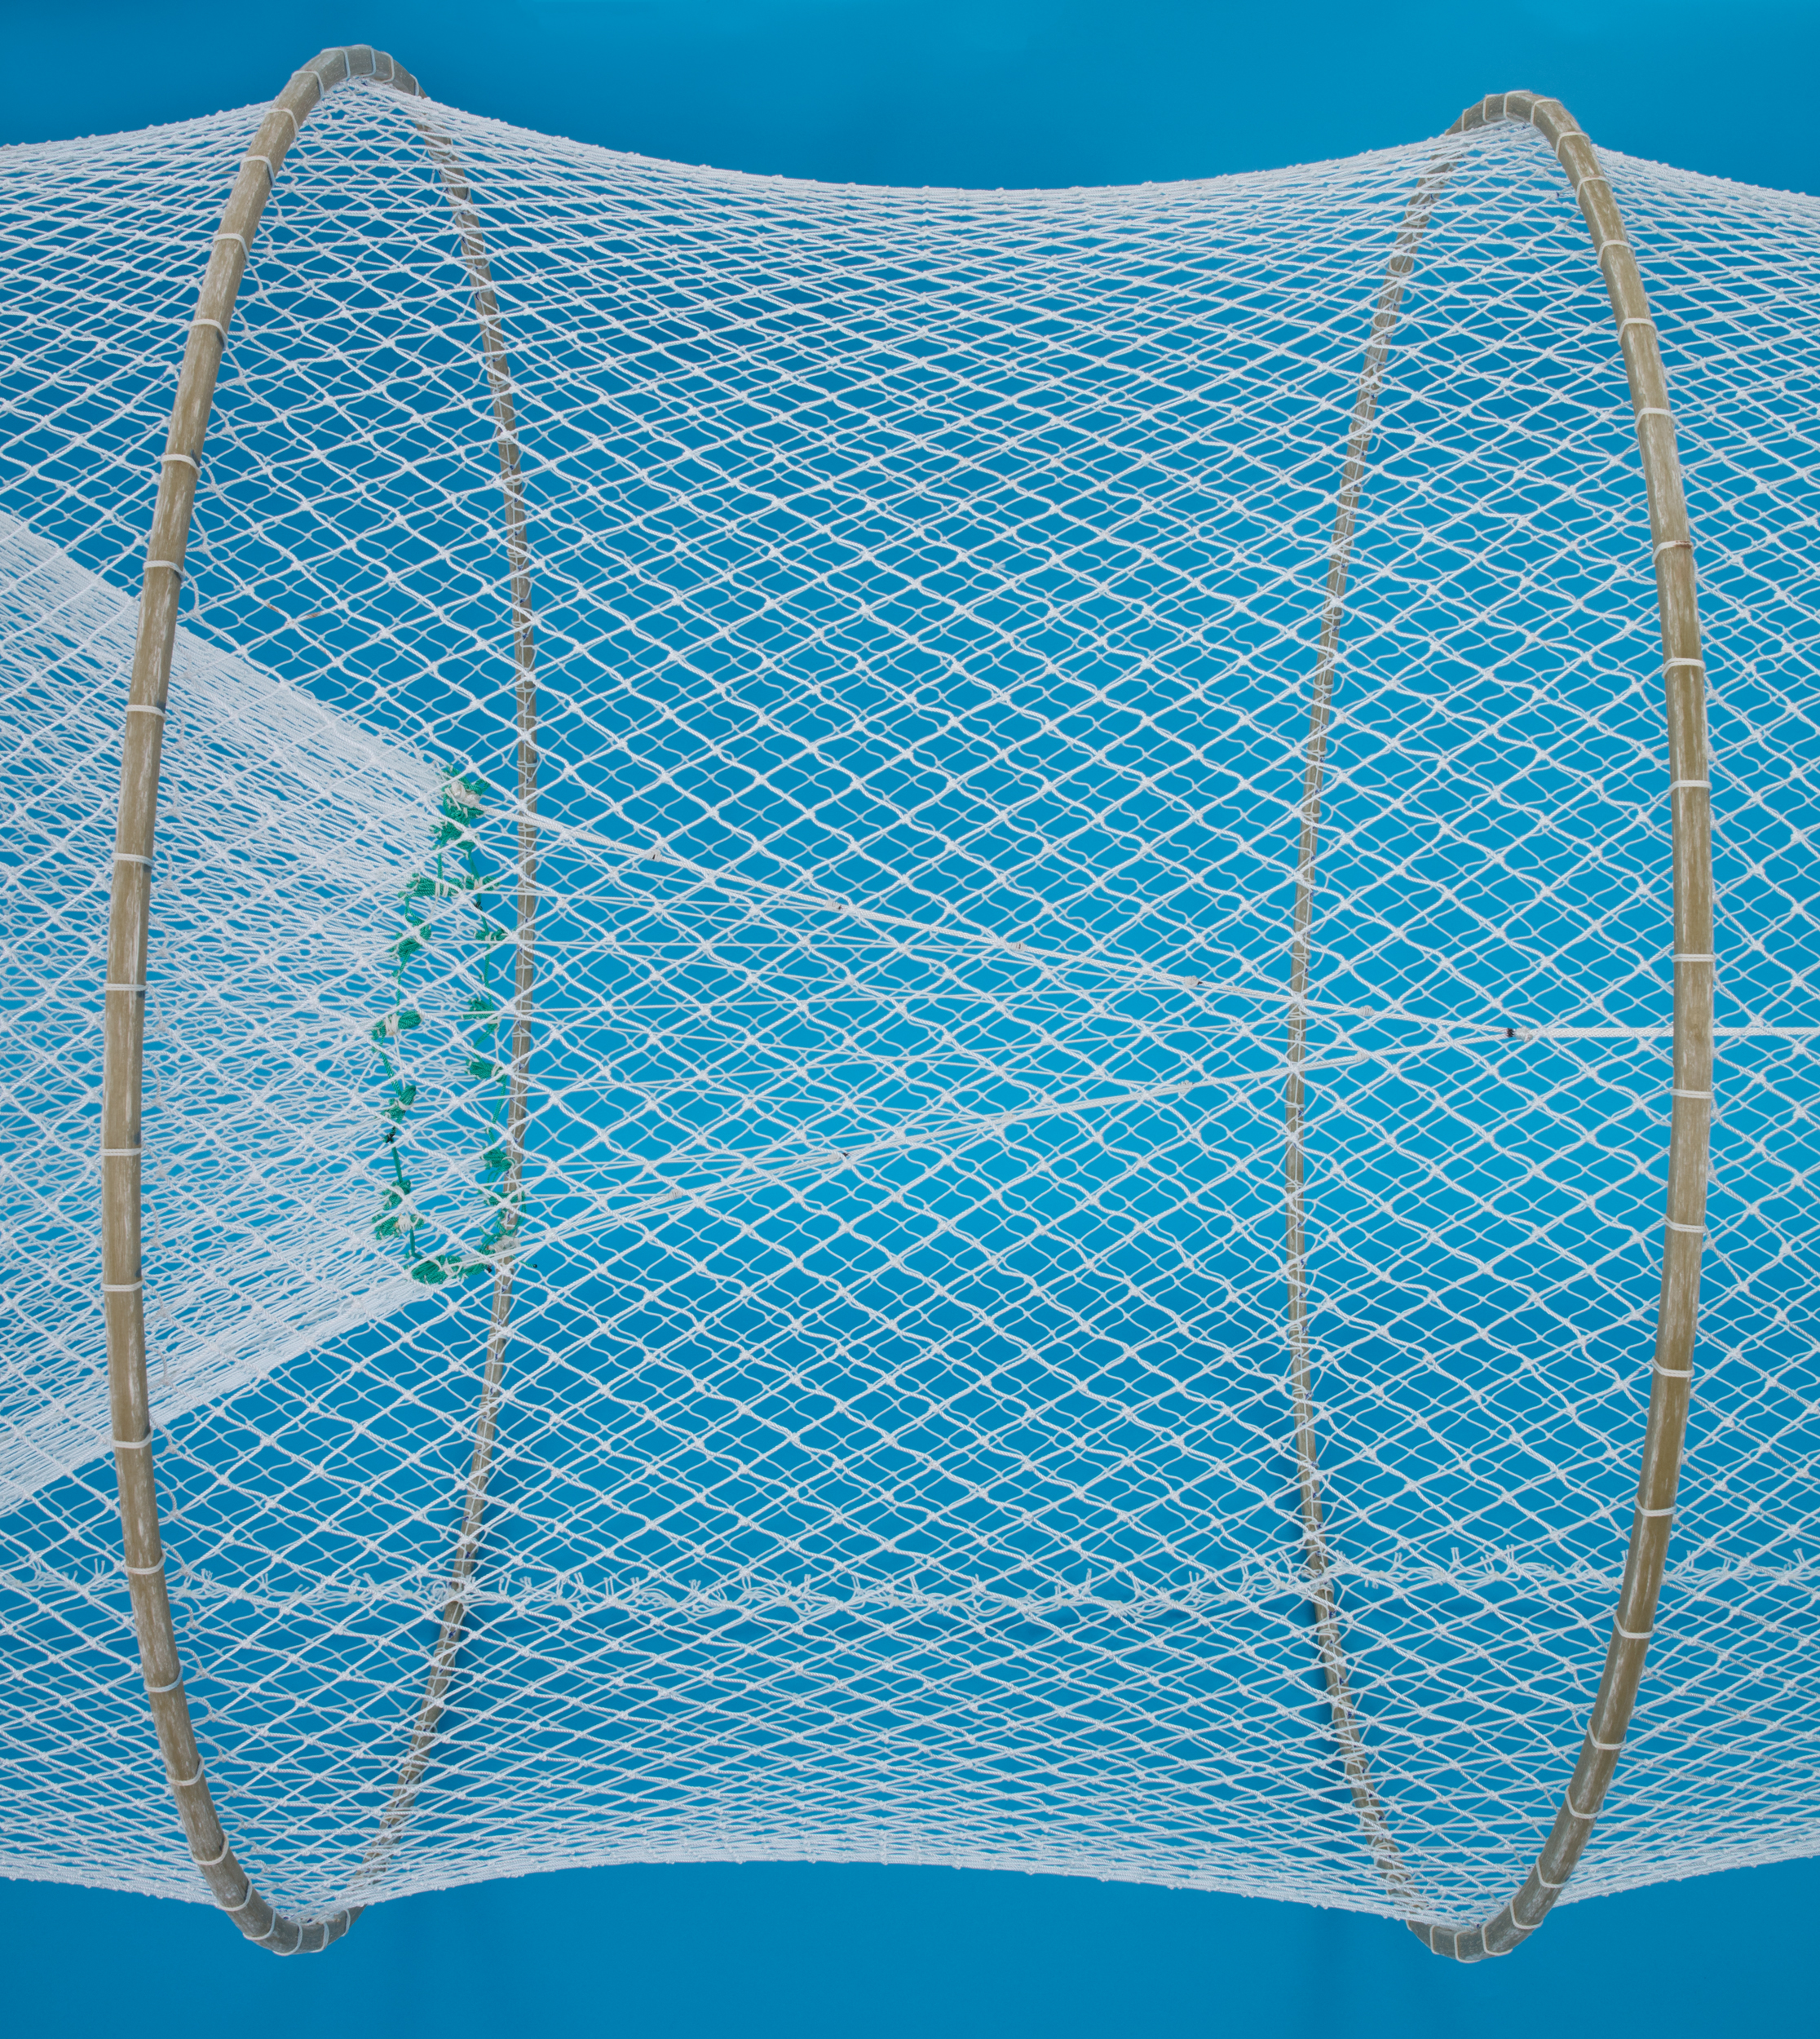 Hoop Nets - Fish Netting - Duluth Fish Nets, An H. Christiansen Co